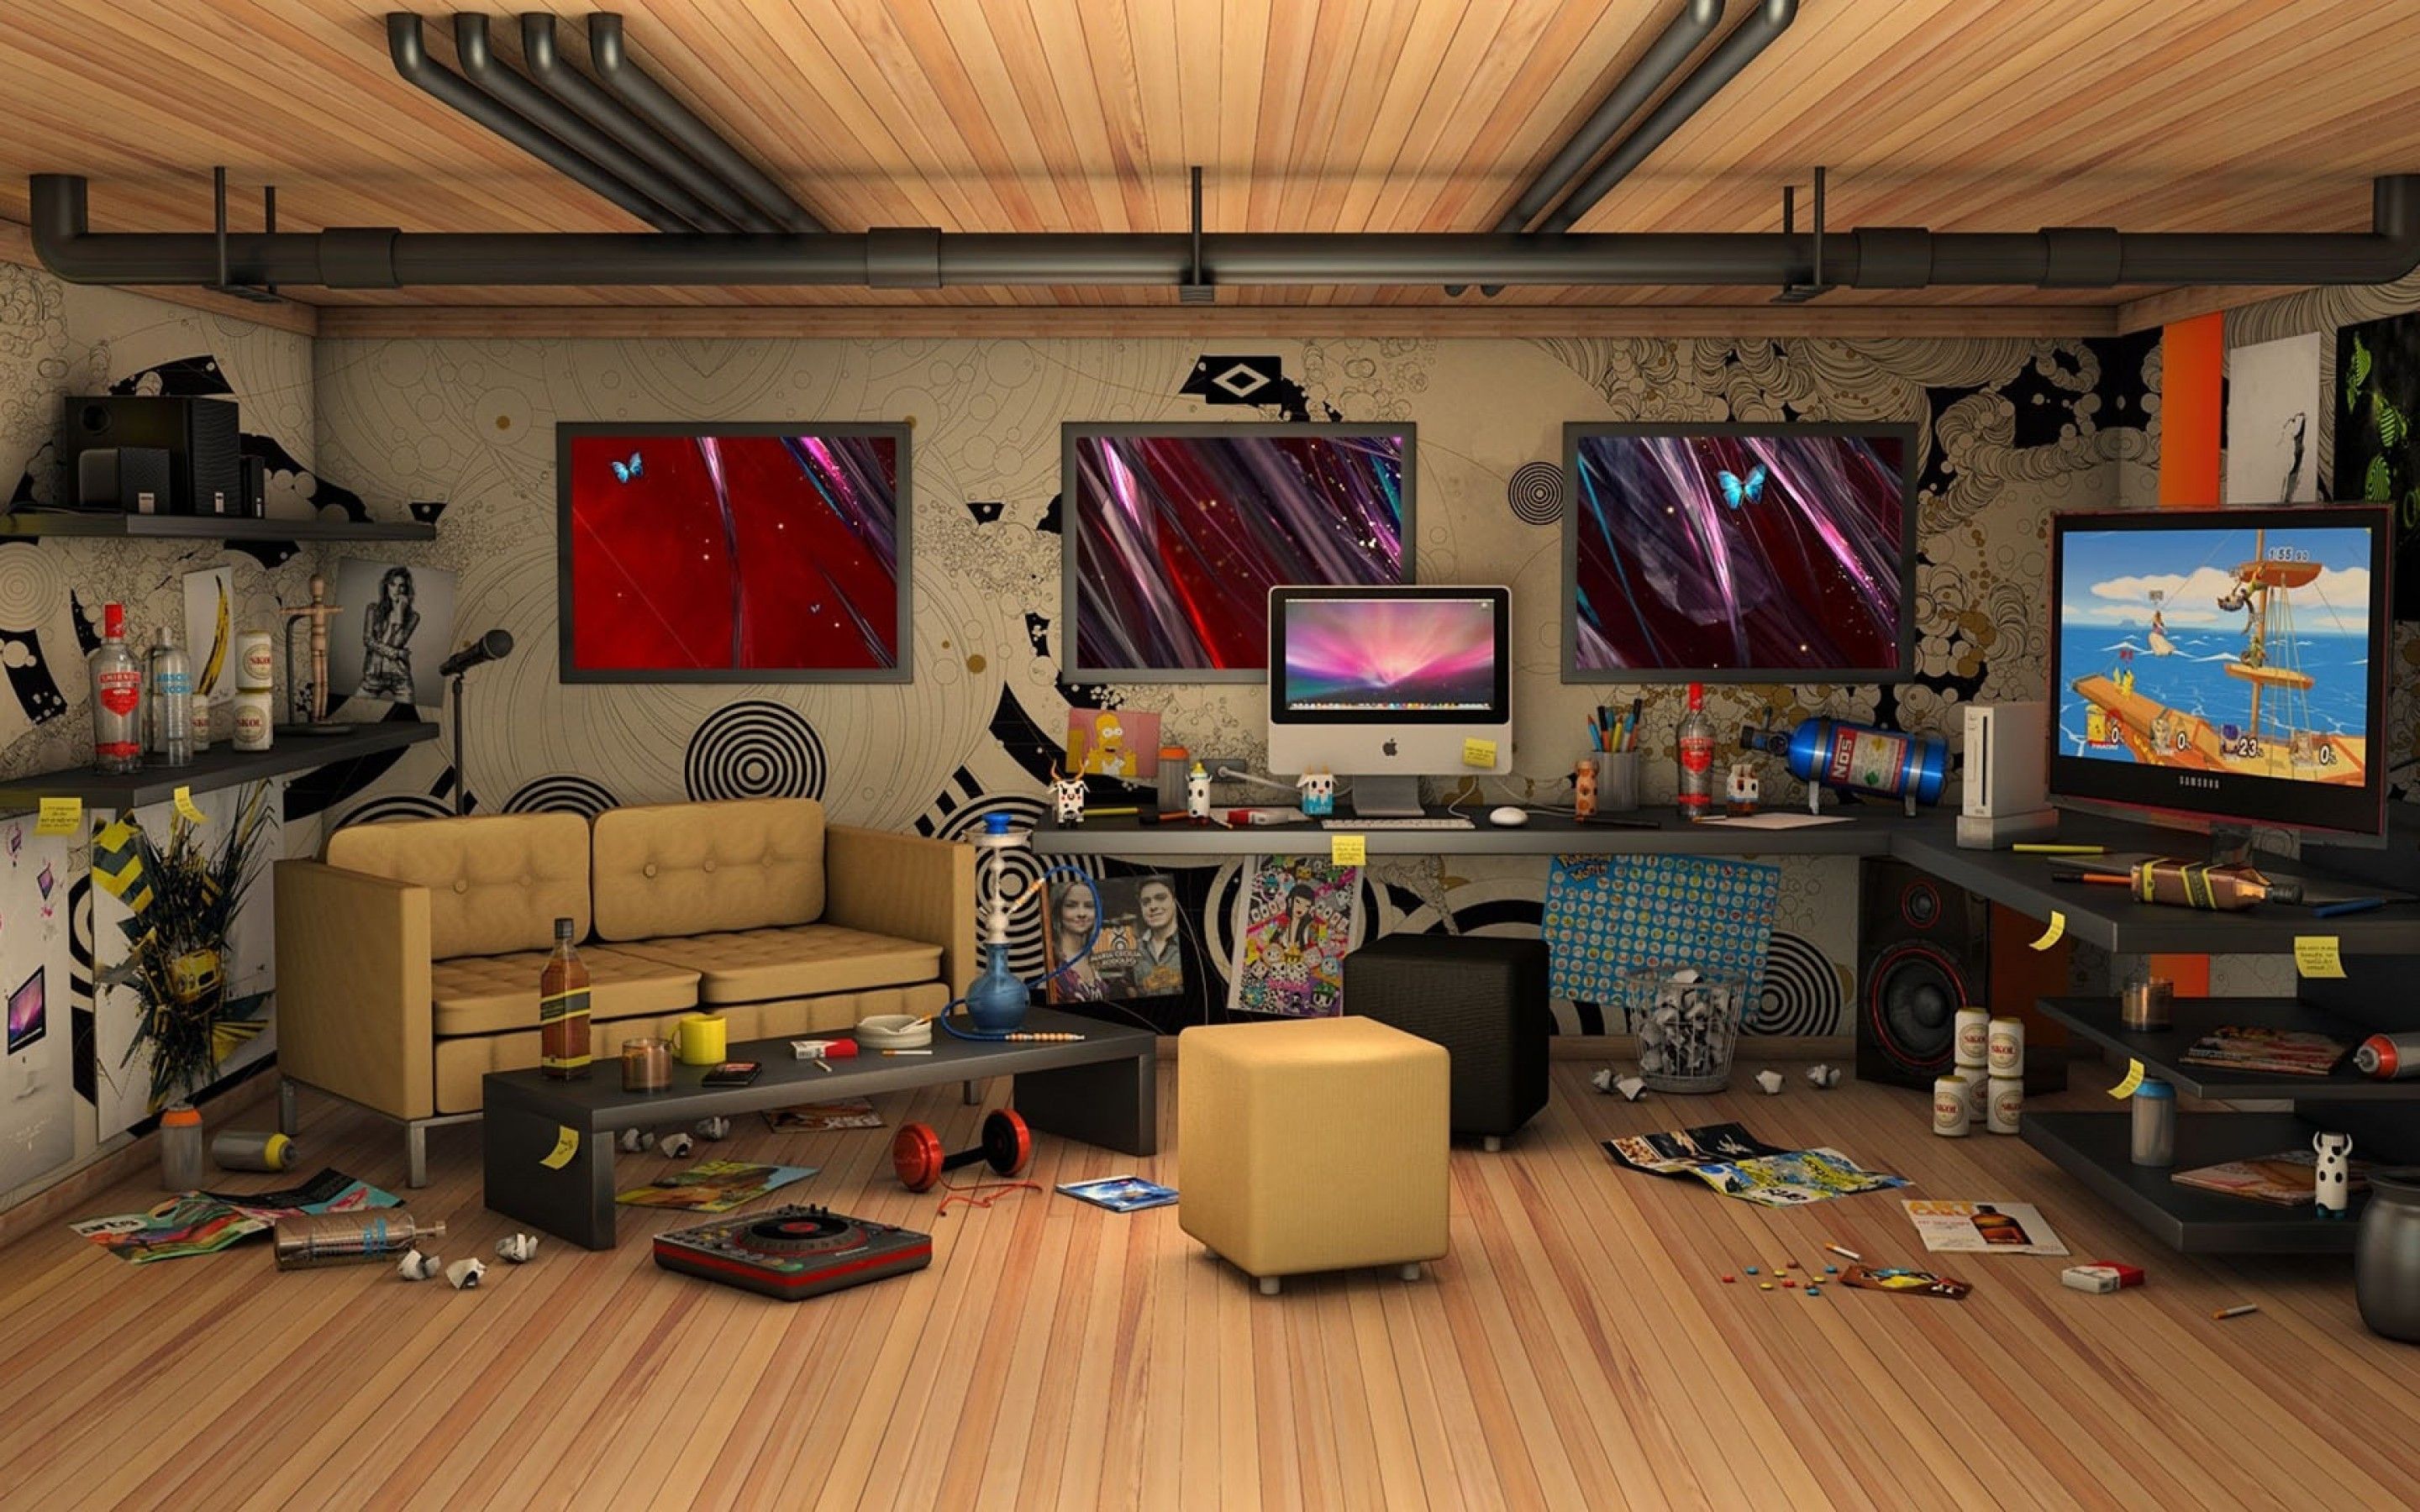 3D Messy Living Room IMac Computer Wallpaper. Frenzia.com. Обои для комнаты, Интерьер, Обои для компьютера